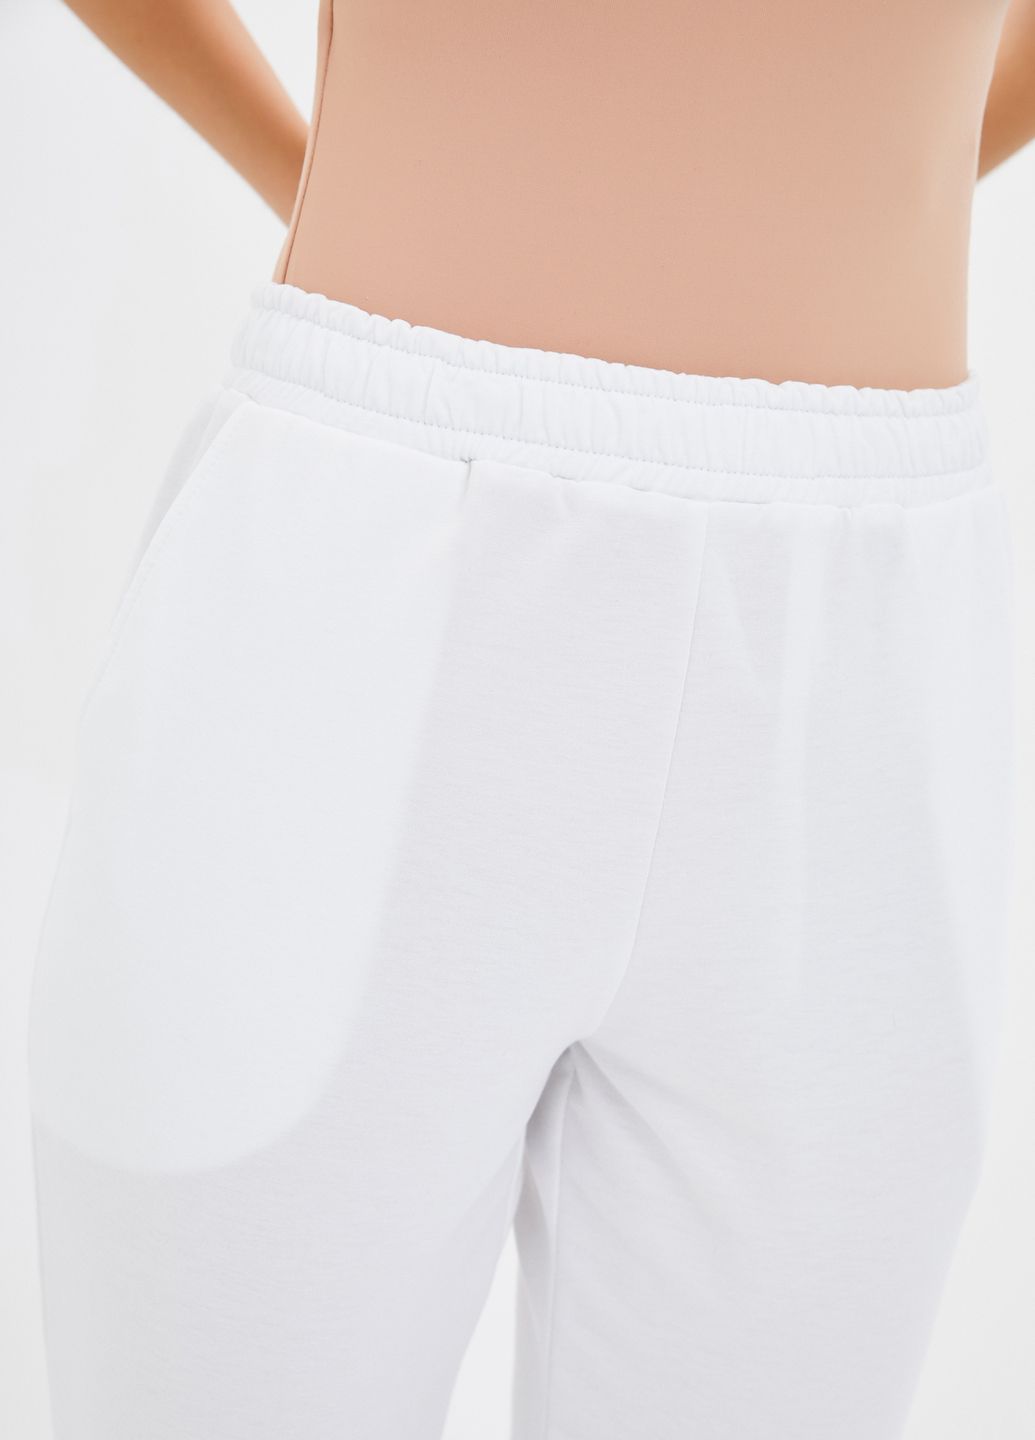 Купить Спортивные штаны женские Merlini Сити 600000056 - Белый, 42-44 в интернет-магазине